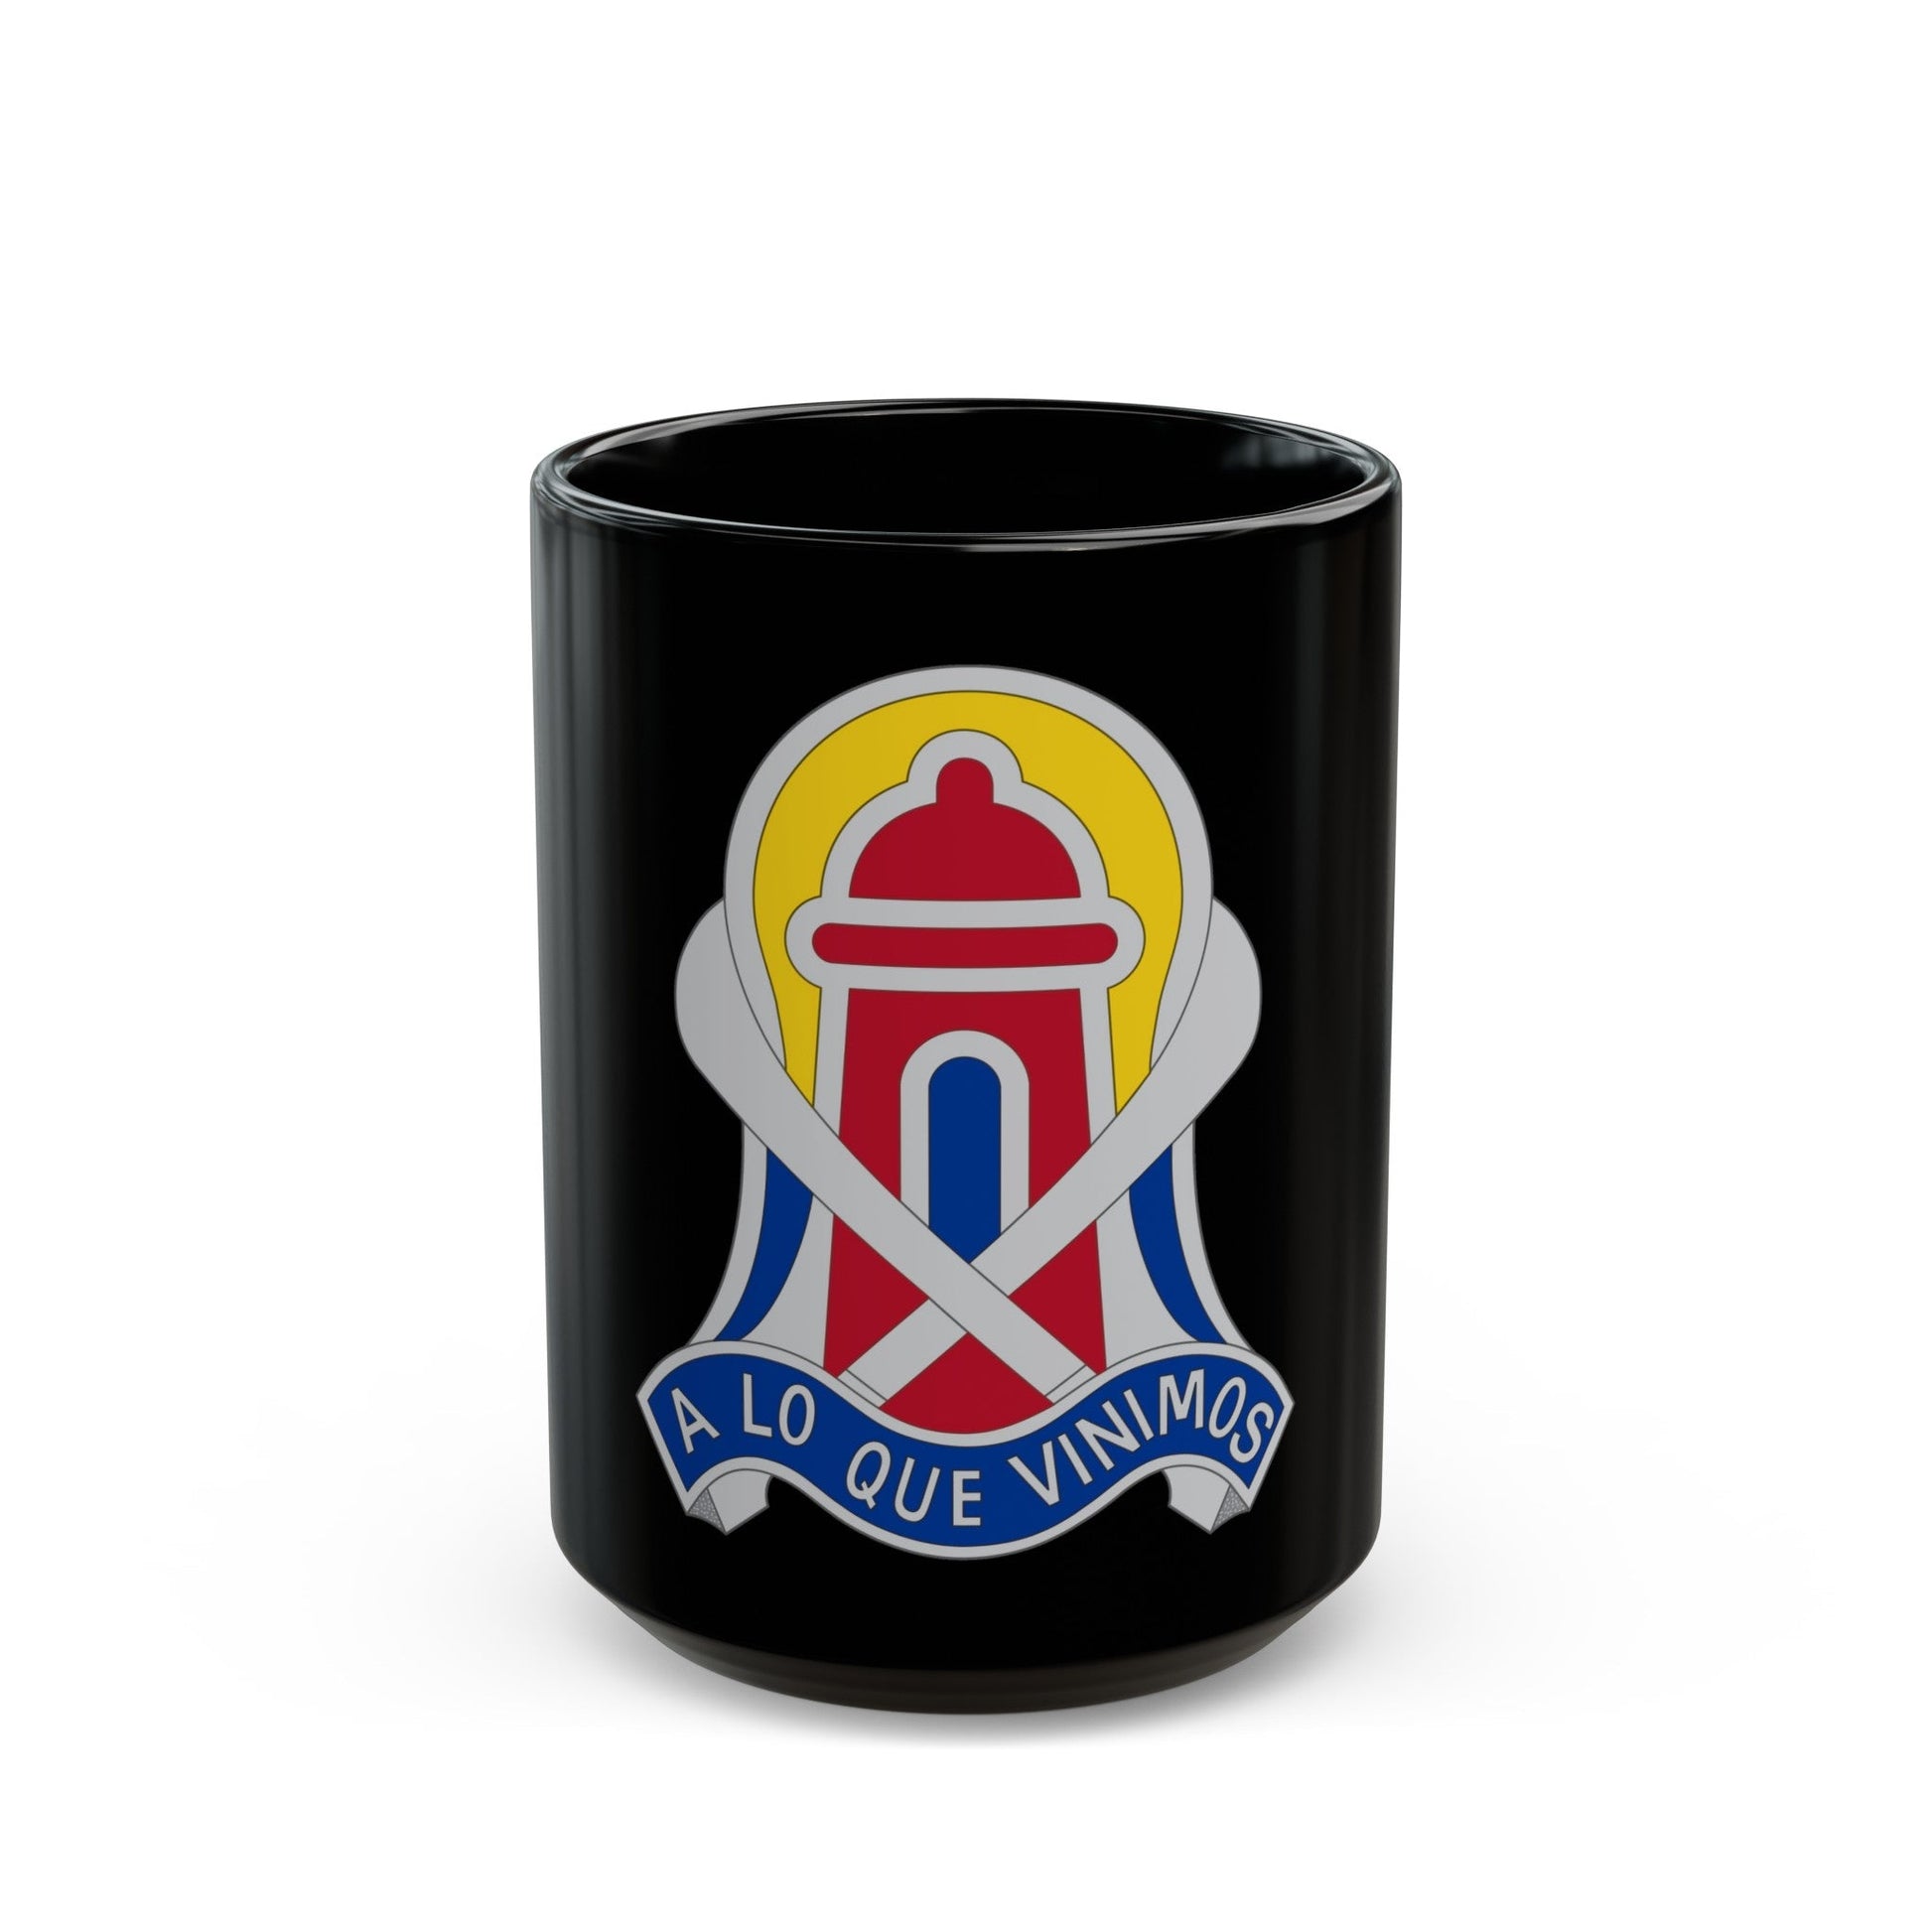 92 Military Police Brigade 2 (U.S. Army) Black Coffee Mug-15oz-The Sticker Space